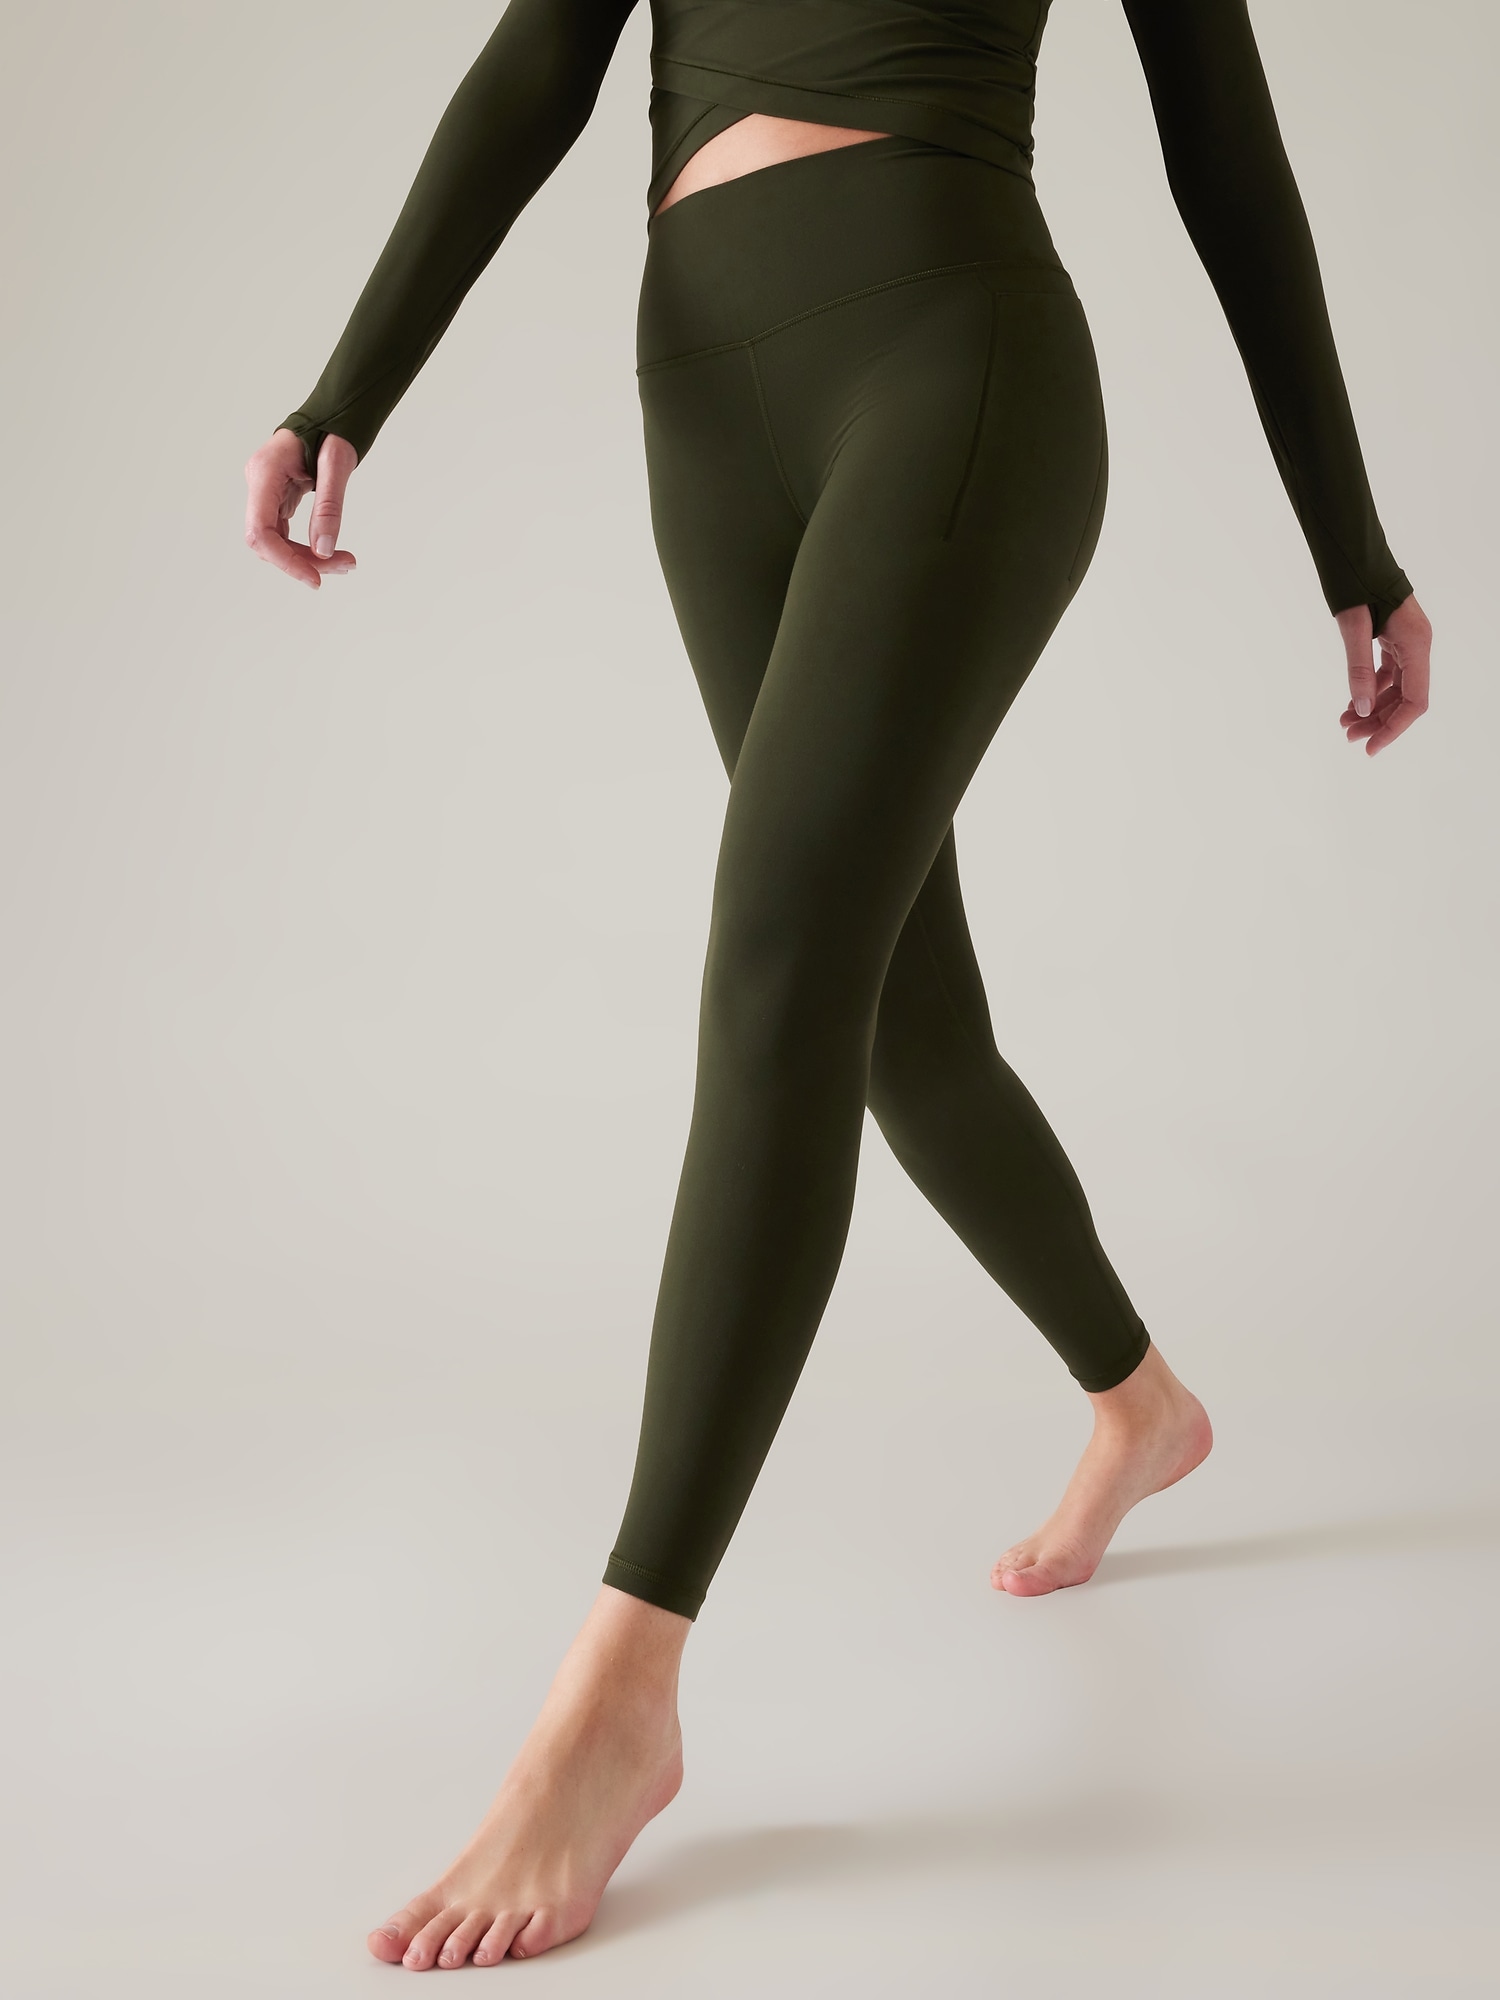 Athleta XL Olive/Green Leggings for Women